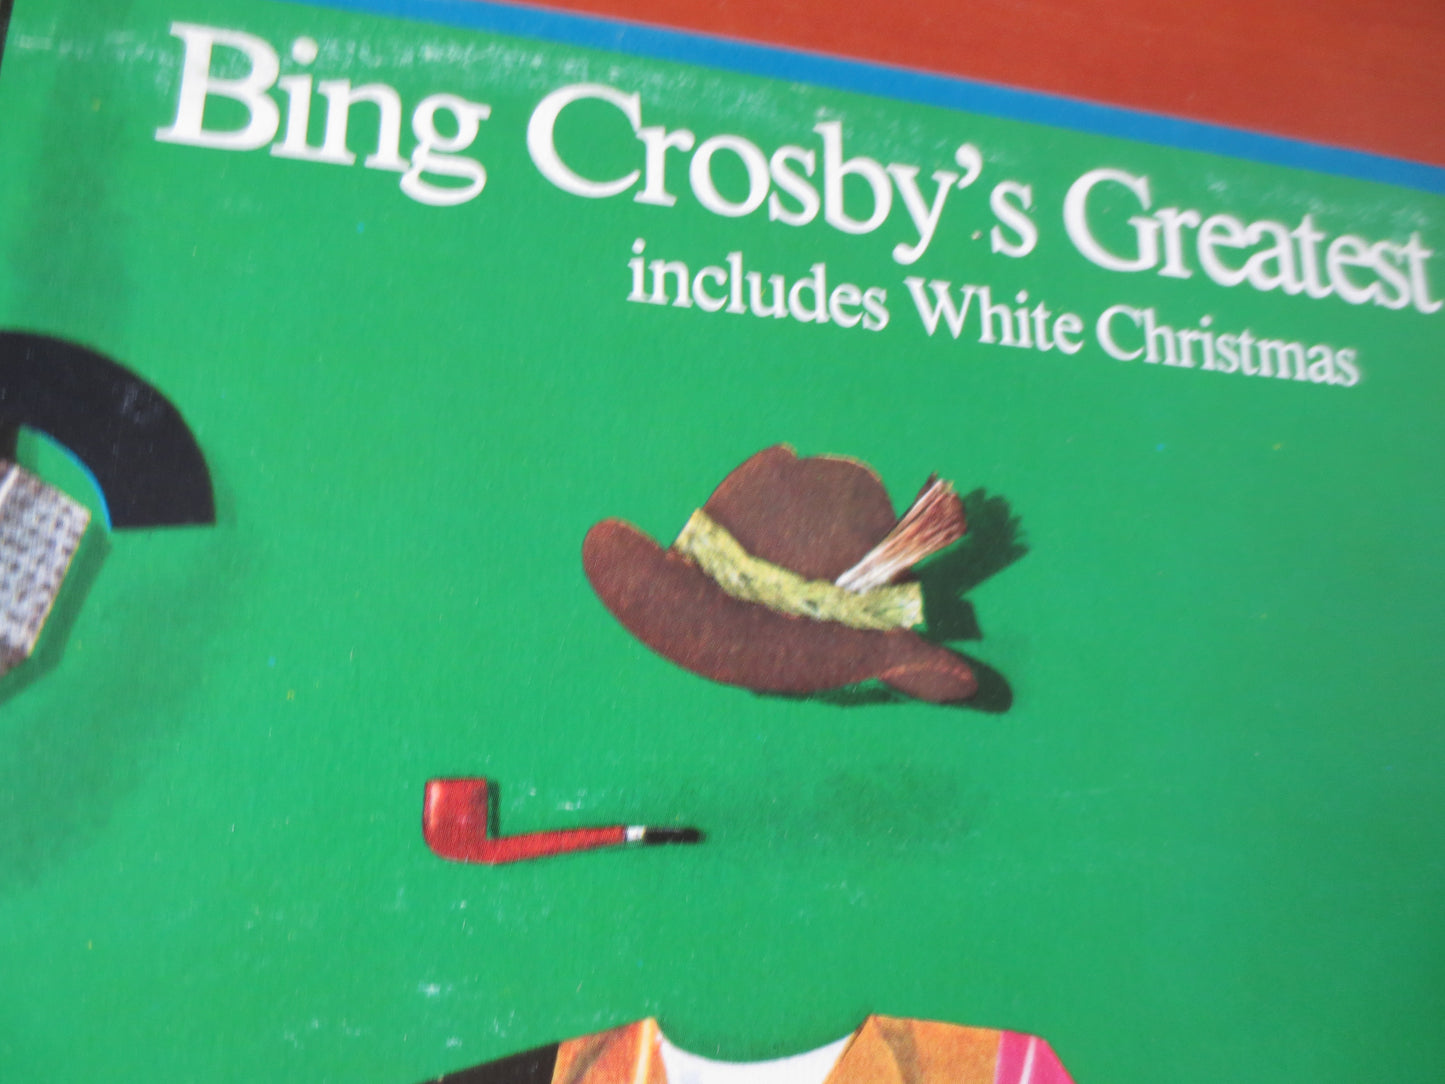 BING CROSBY, GREATEST Hits, Bing Crosby Records, Jazz Record, Vintage Vinyl, Bing Crosby Albums, Records, Lps, 1977 Records